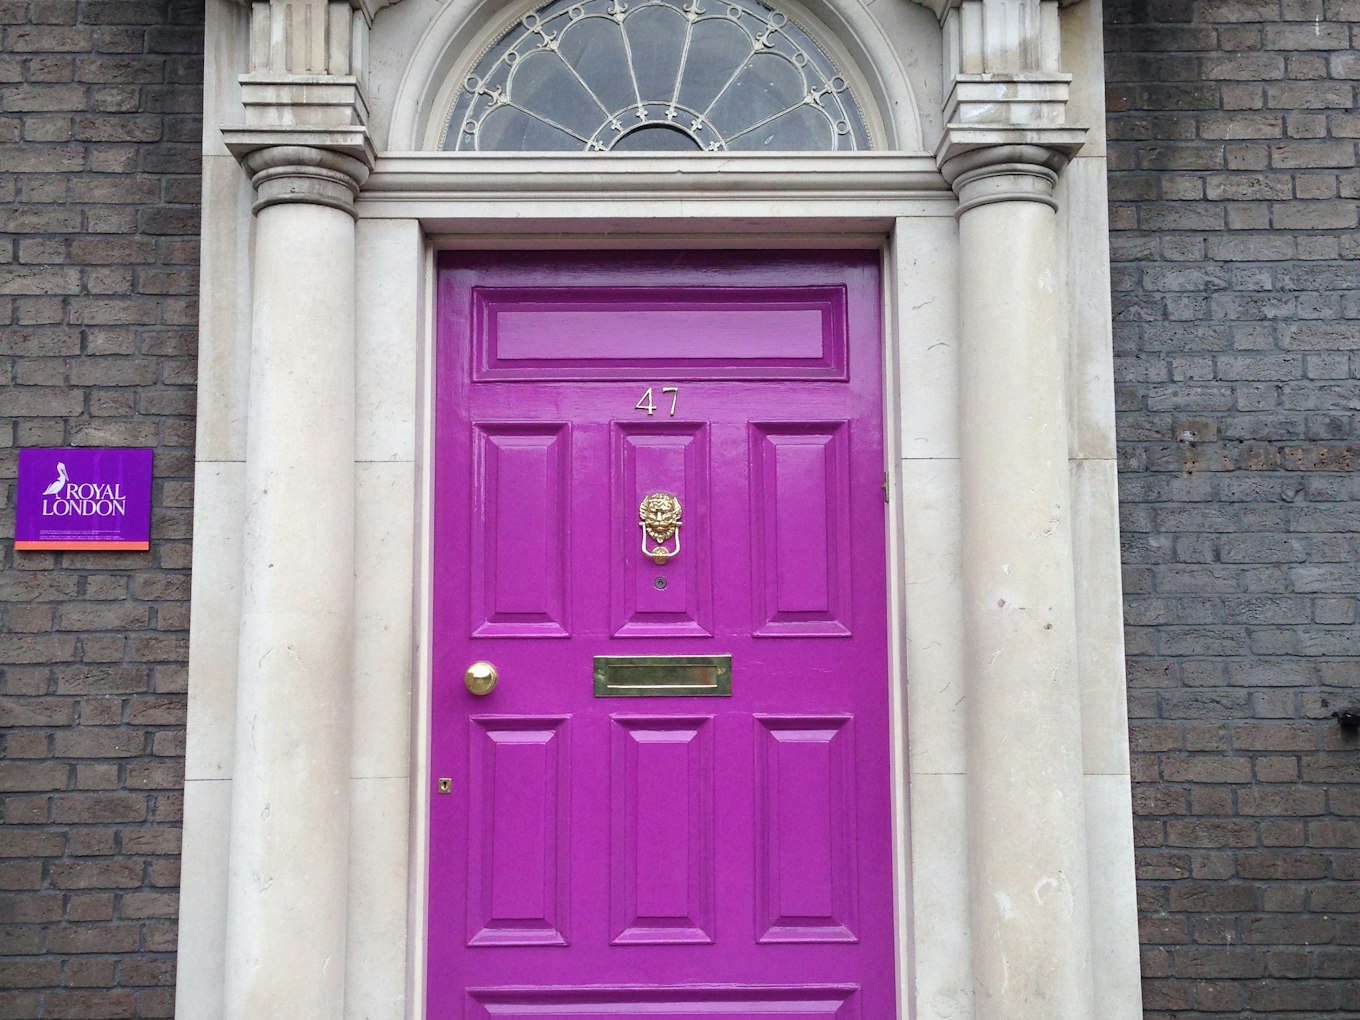 De prachtig gekleurde deuren door de hele stad, in Dublin